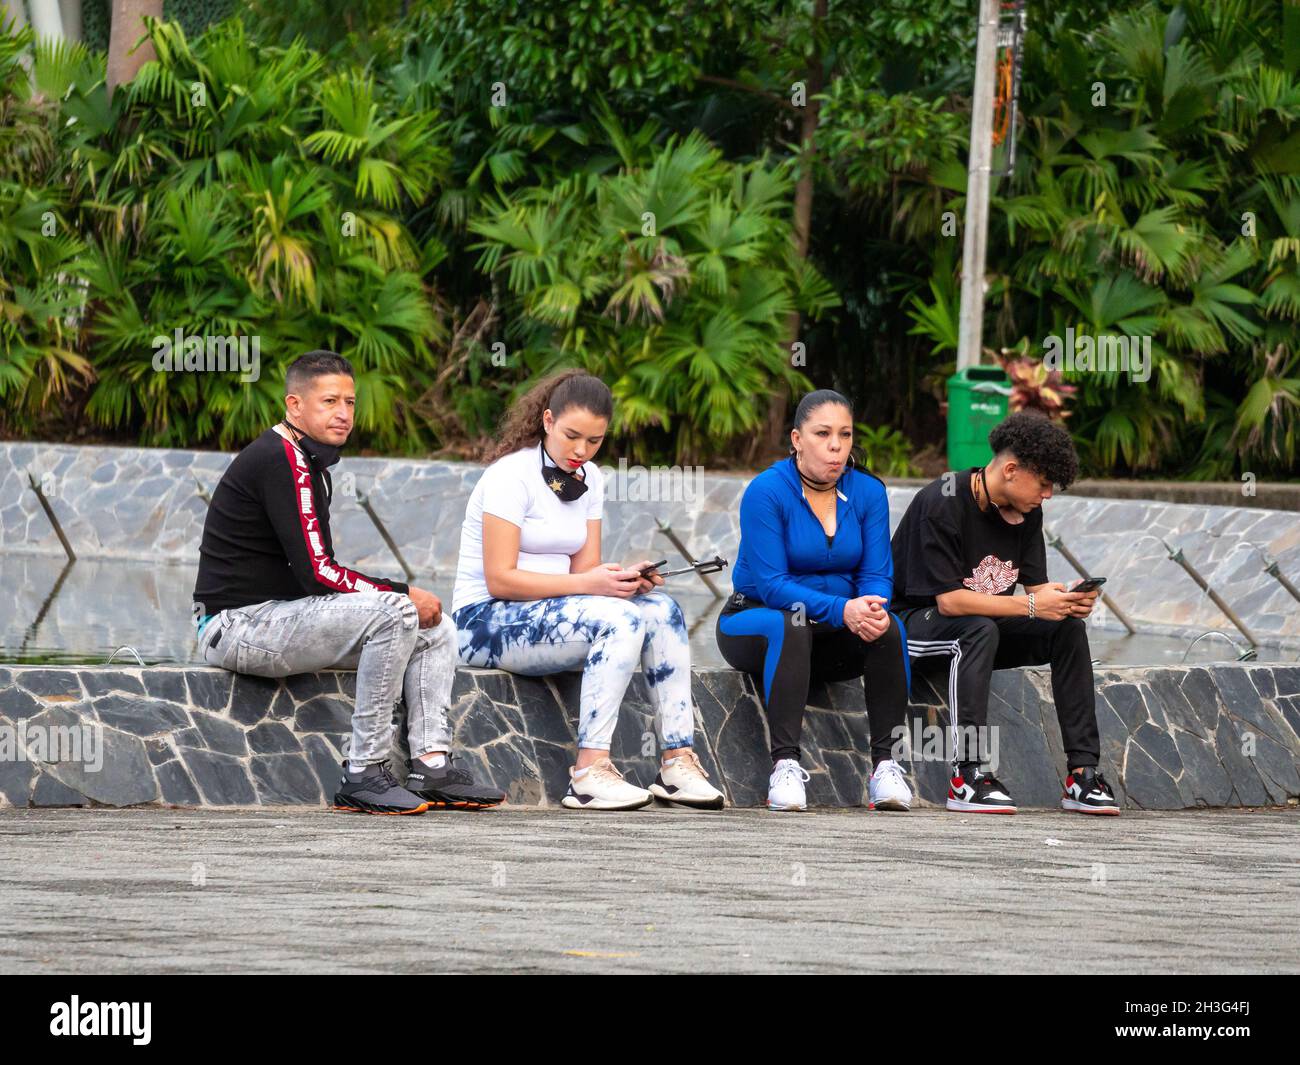 Medellin, Antioquia, Colombia - Dicembre 22 2020: Amici seduti in una fontana in un parco pubblico Foto Stock